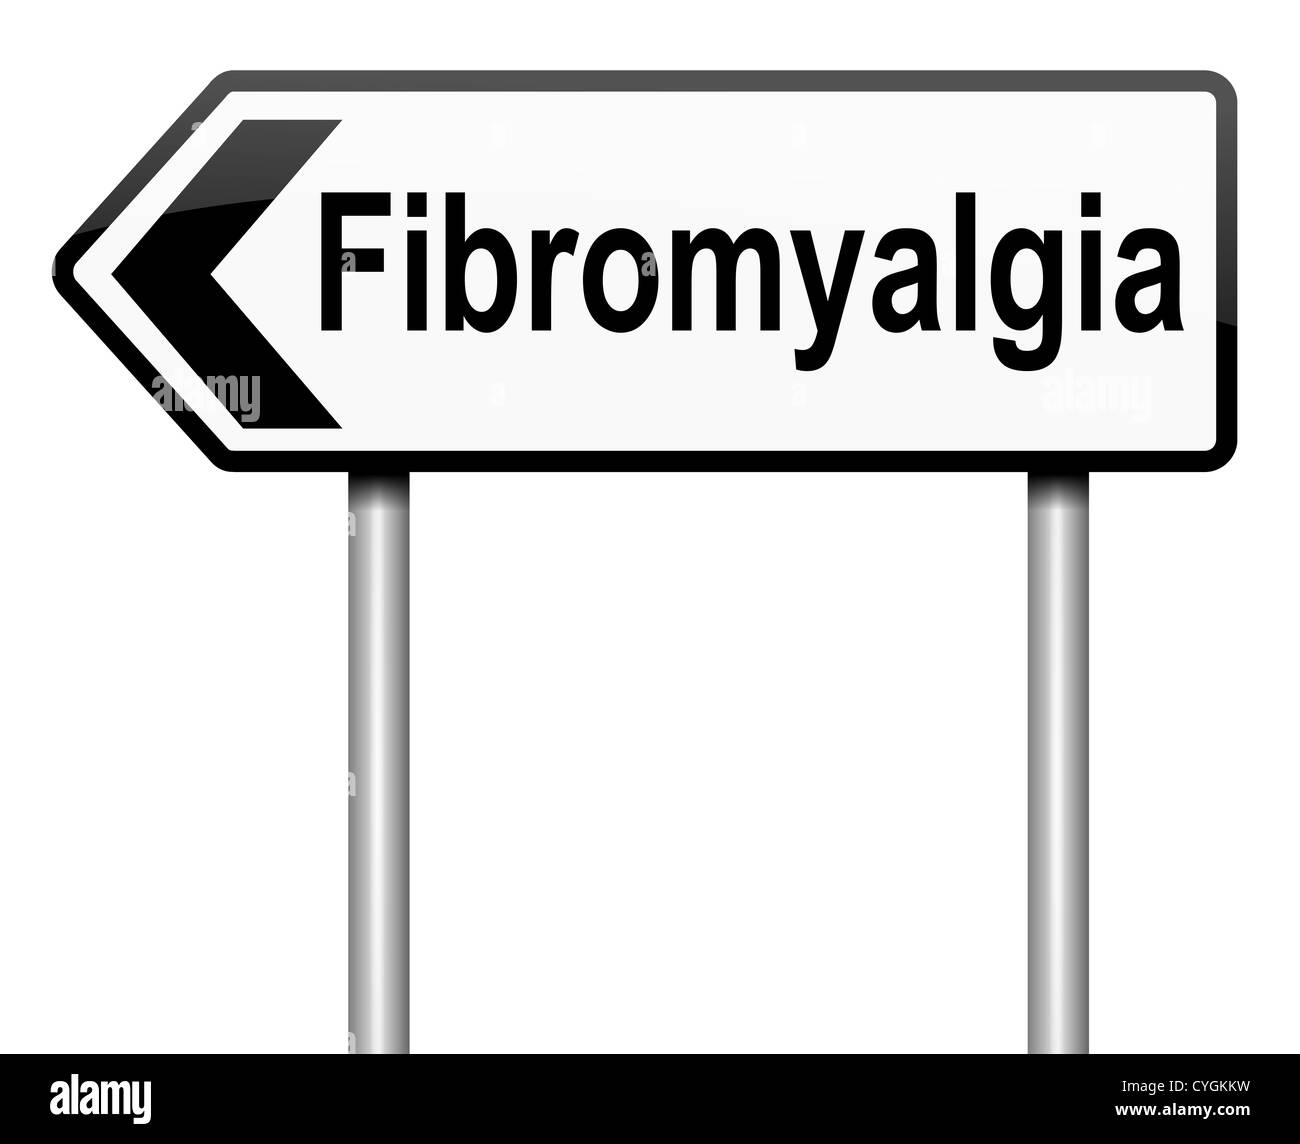 Fibromyalgia. Stock Photo